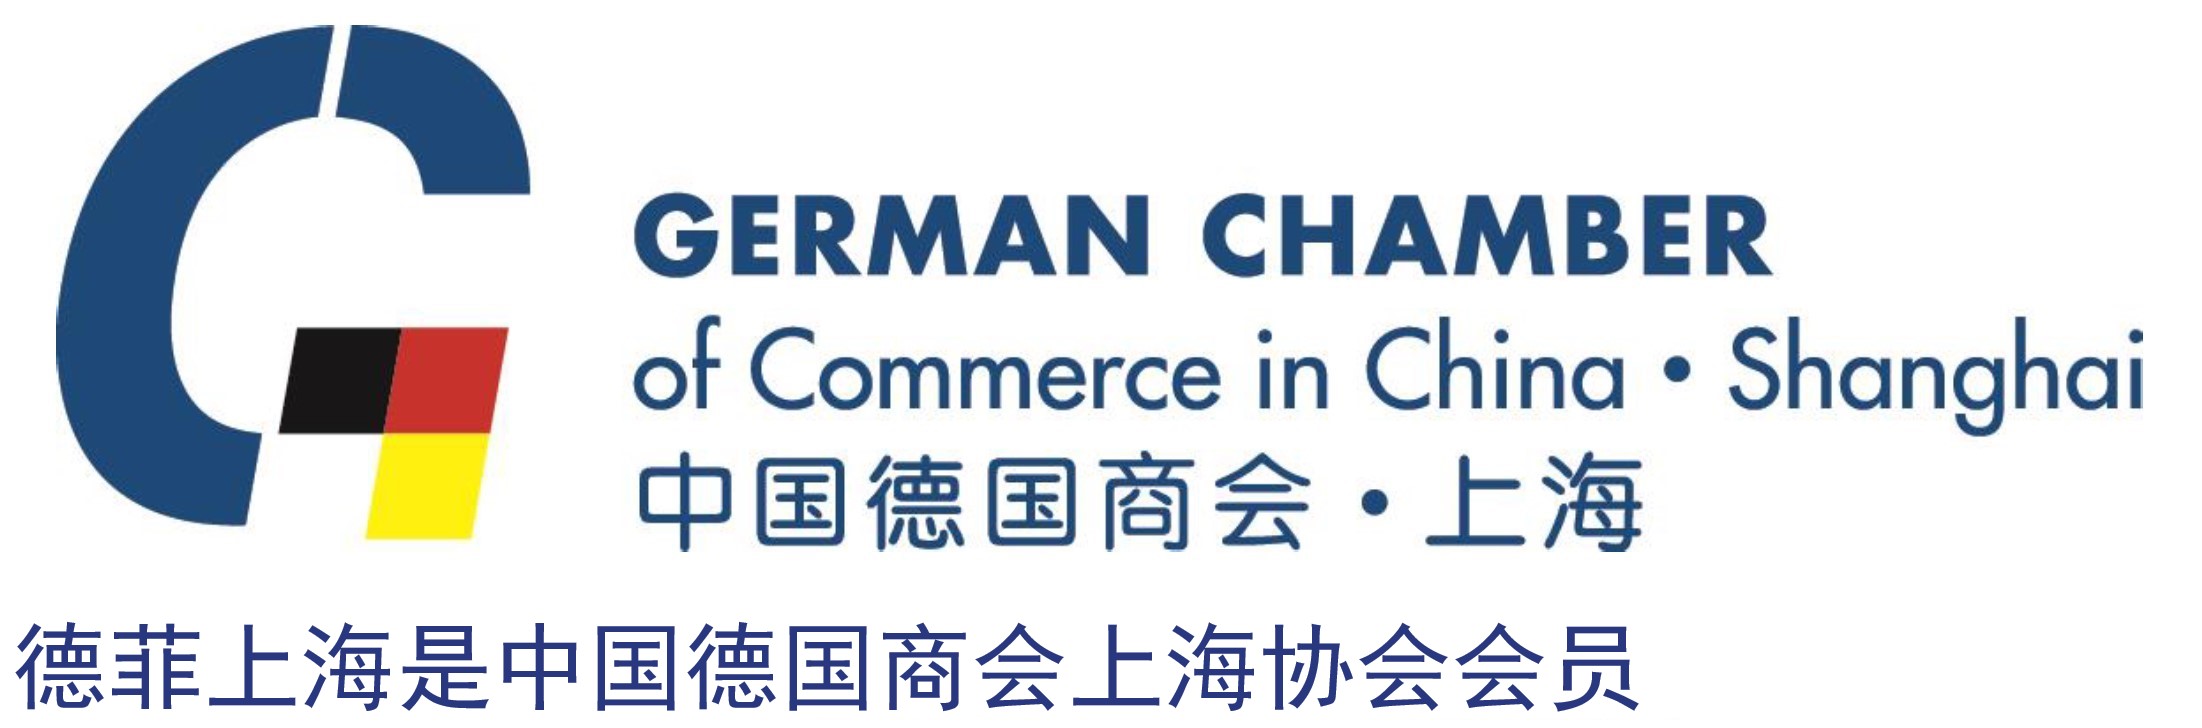 中国德国商会会员证书_上海2020